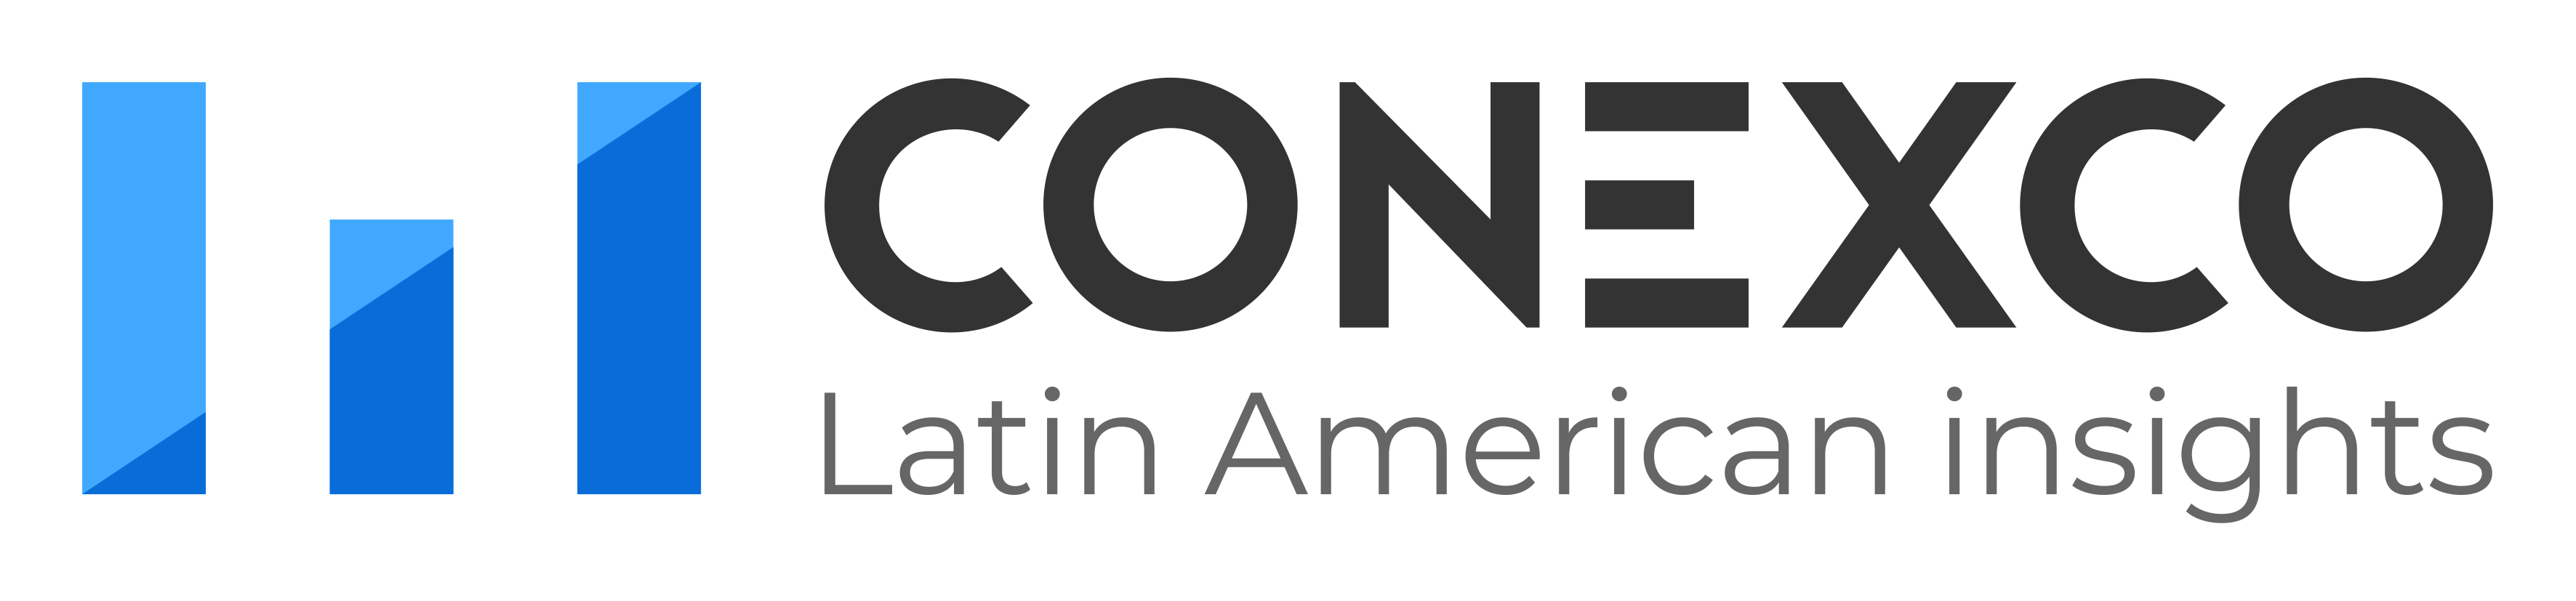 Conexco_Logo_on_the_Left-3